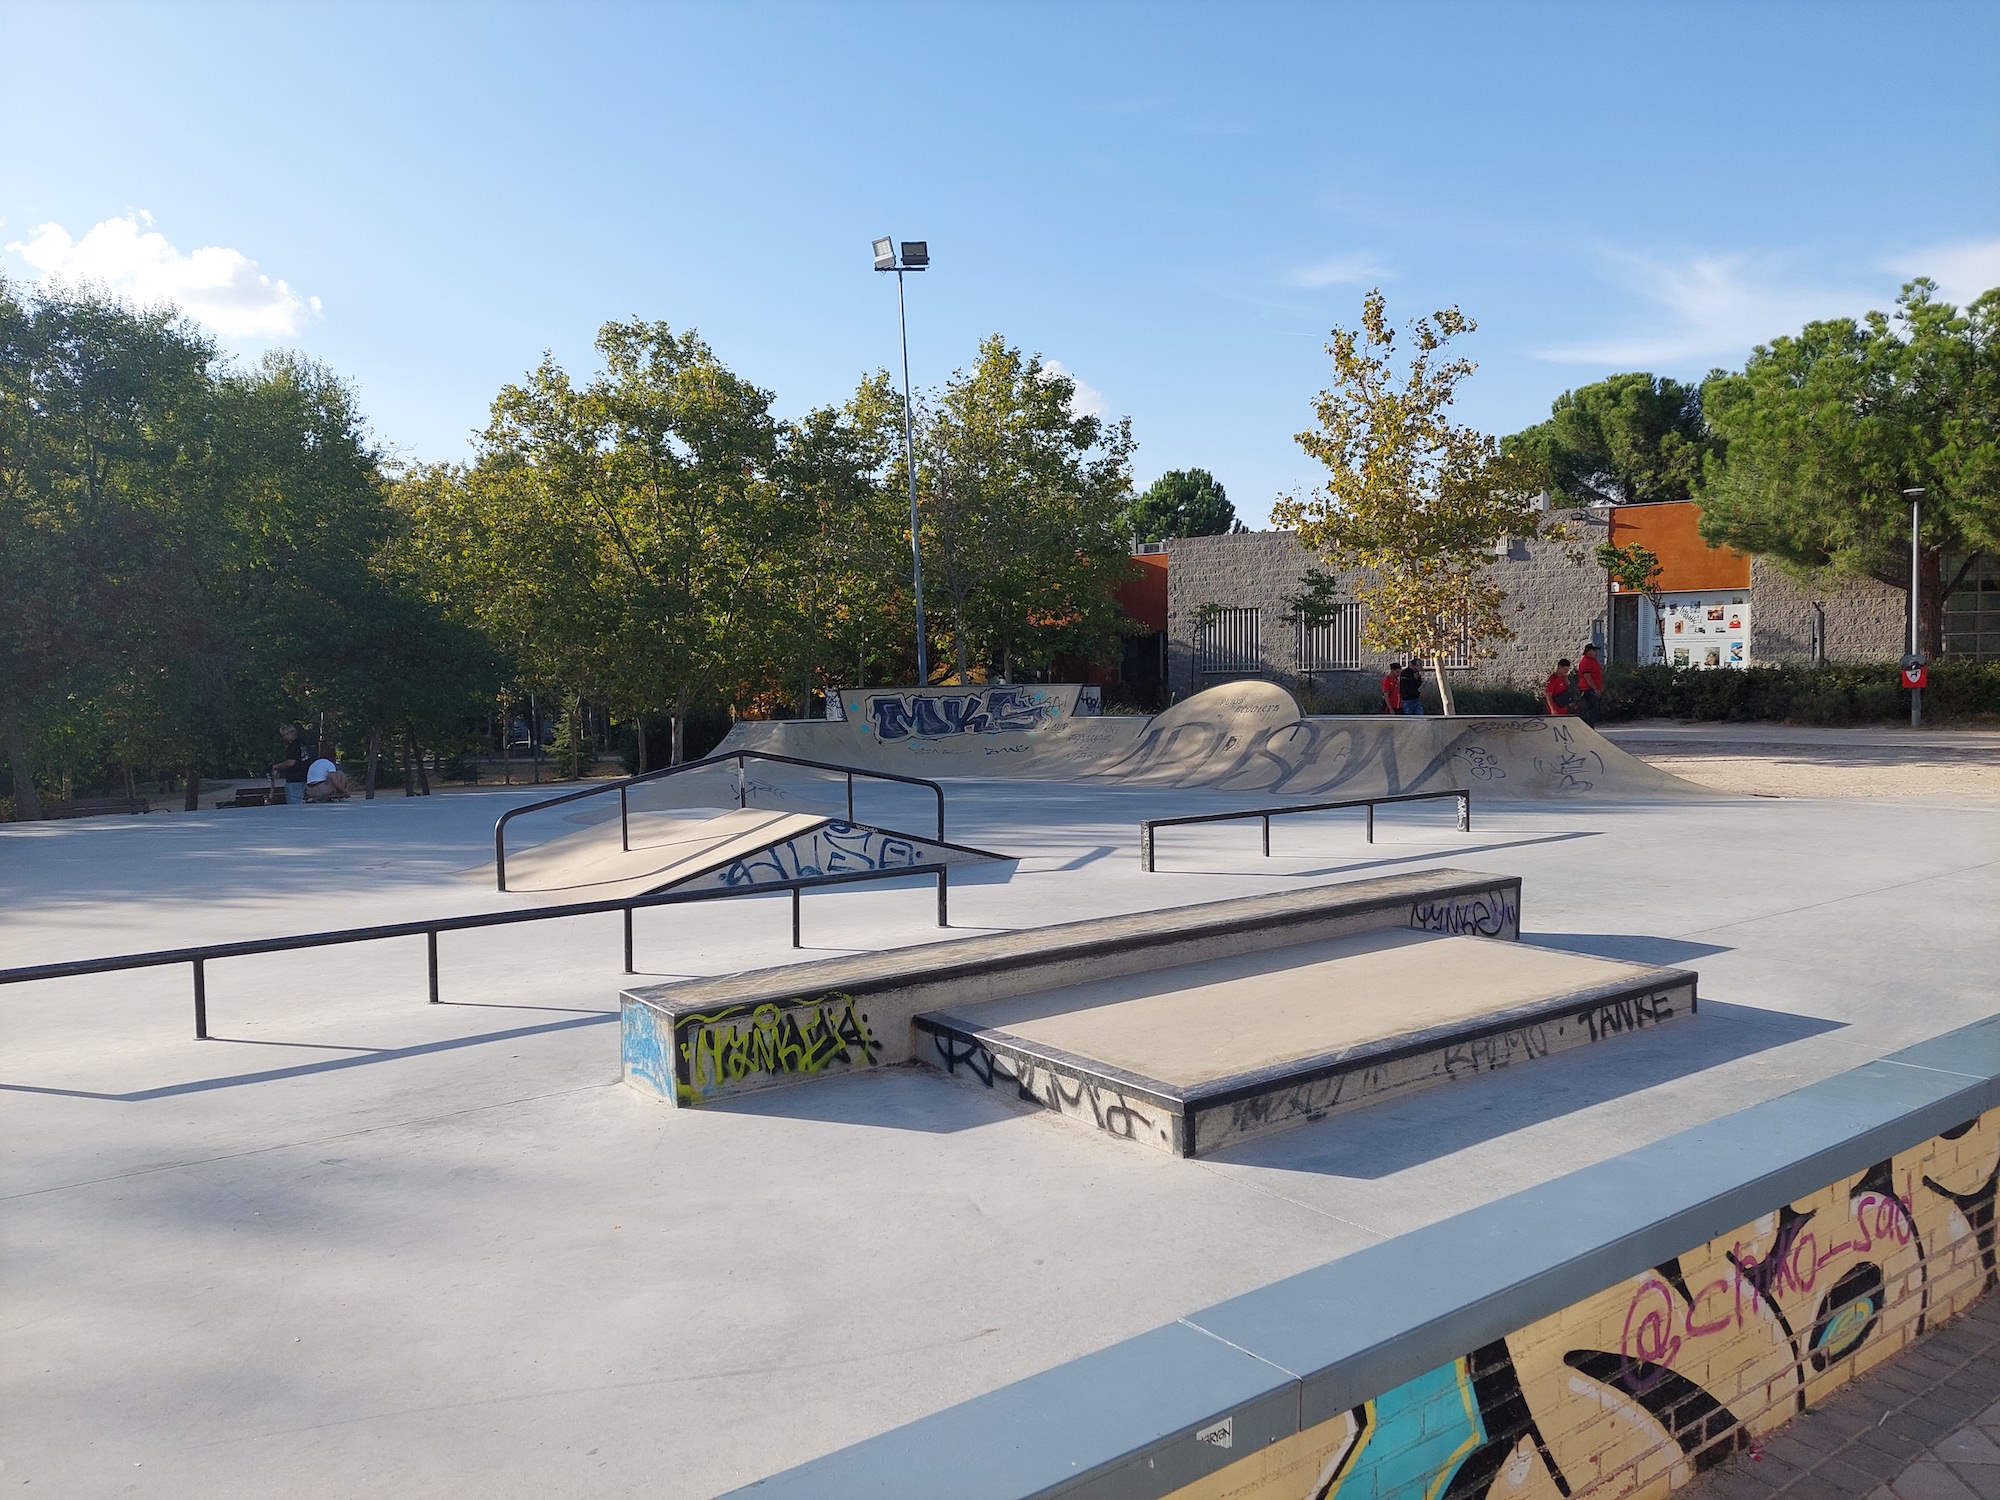 Rivas Vaciamadrid skatepark